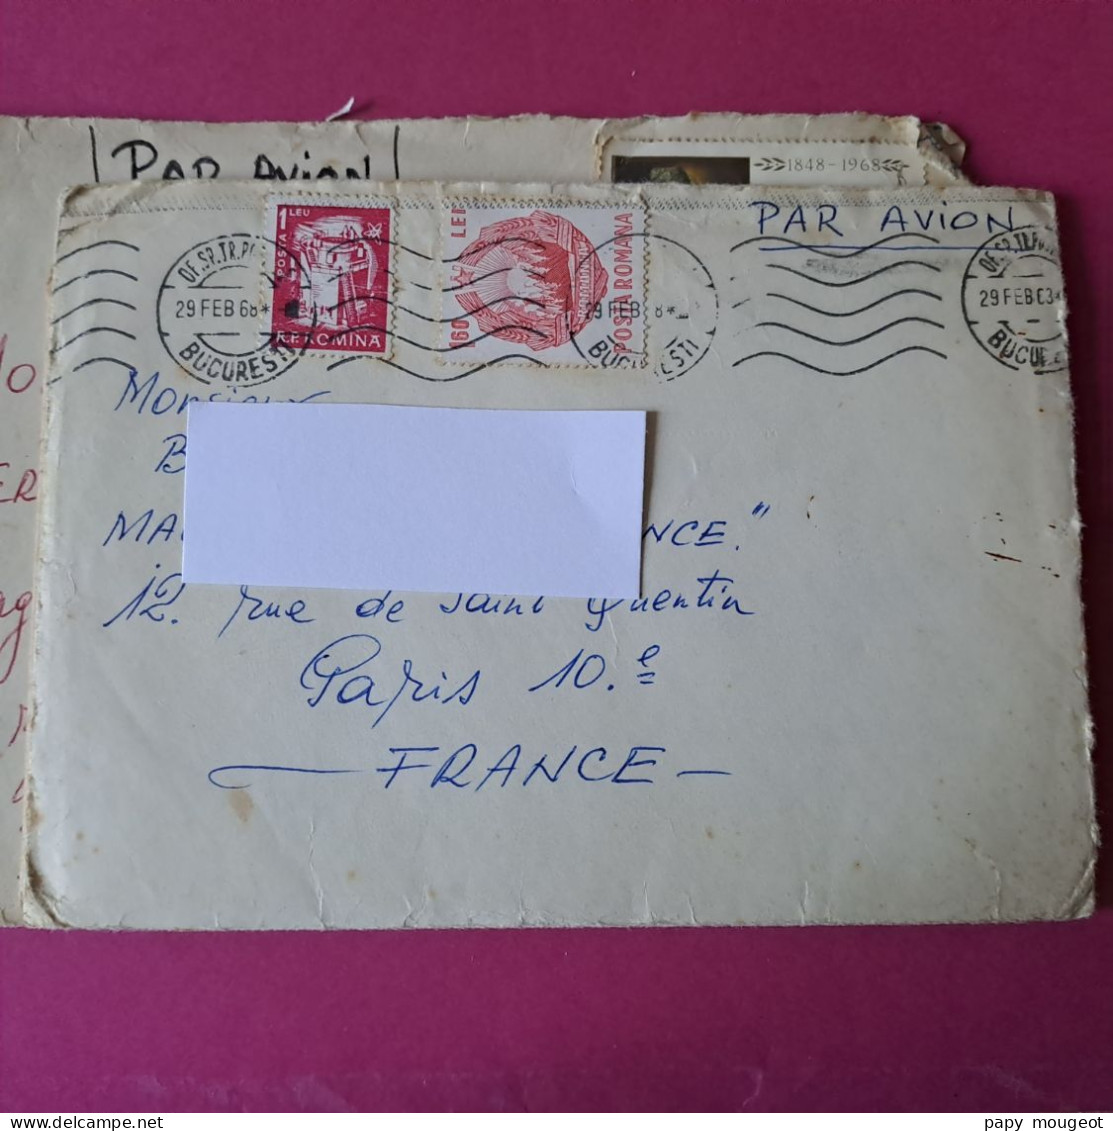 13 Lettres la majorité par avion de Bucarest  à la même famille années 1964 - 1969 une partie avec correspondance